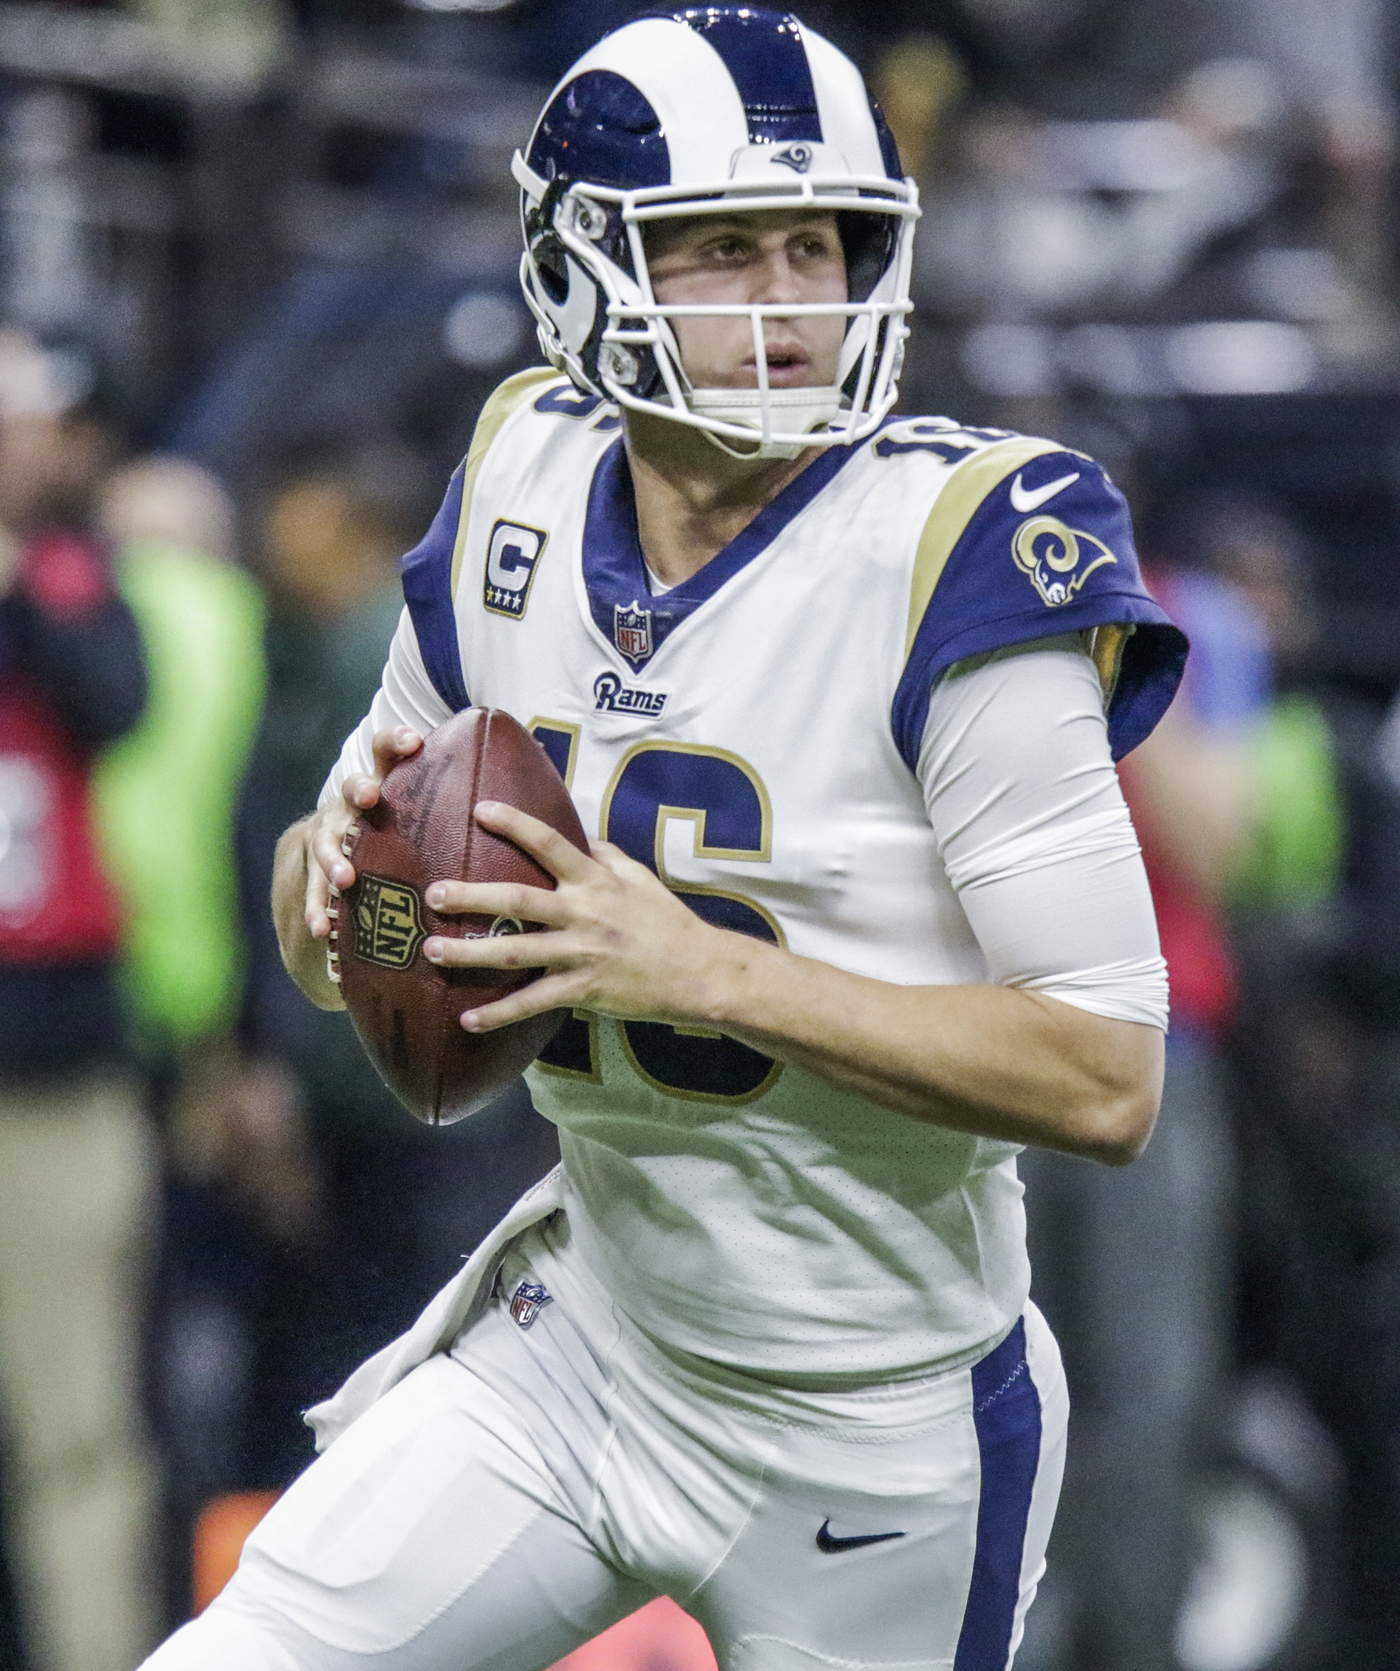 El mariscal de campo de los Rams, Jared Goff, es 17 años menor que Tom Brady, quarterback delos ‘Pats’. (AP)